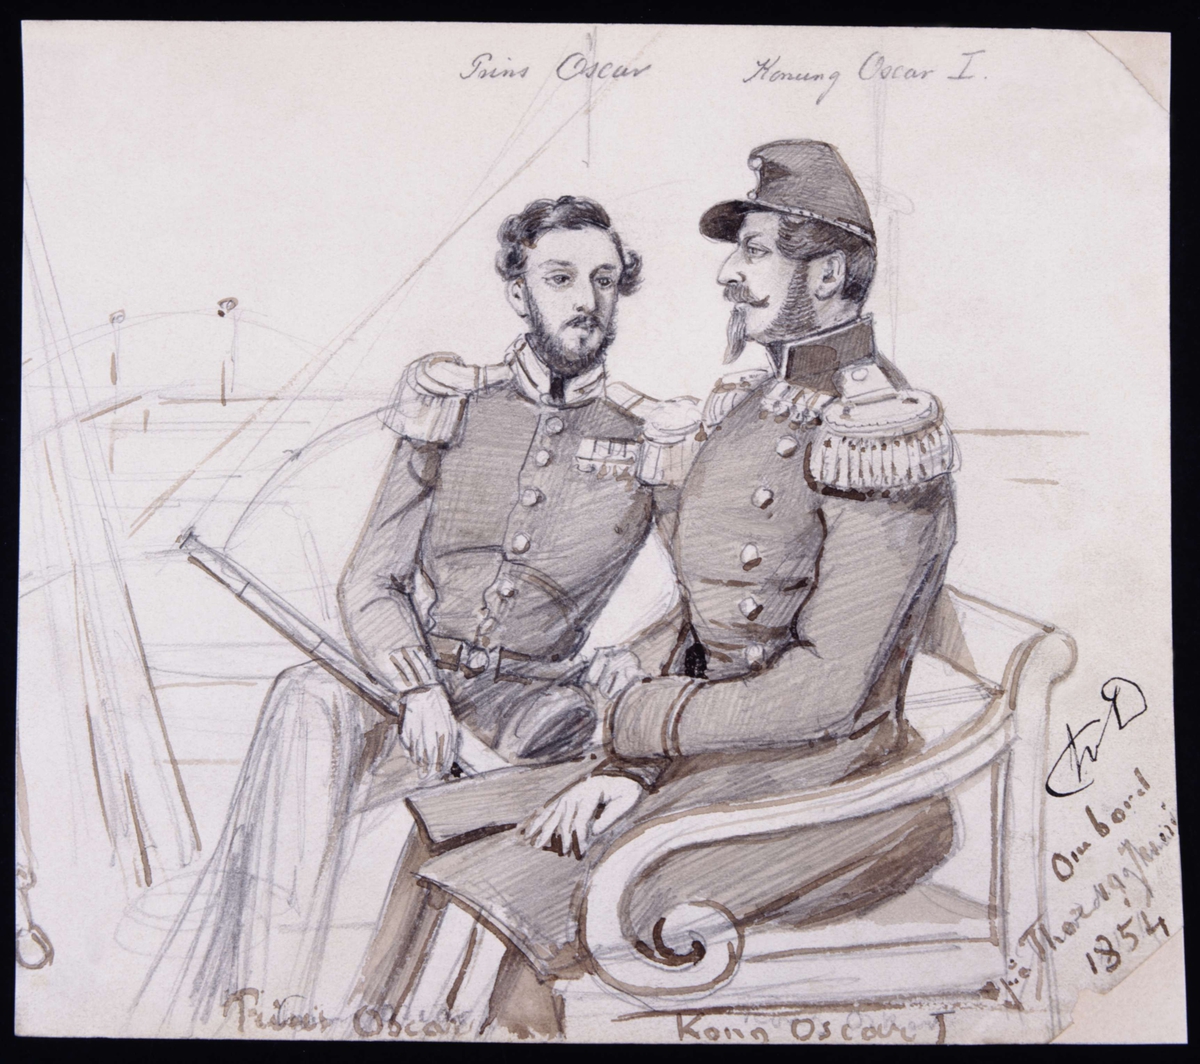 Prins Oscar och Kung Oscar I ombord på en båt. Tuschlavering, sepia av Fritz von Dardel, 1854